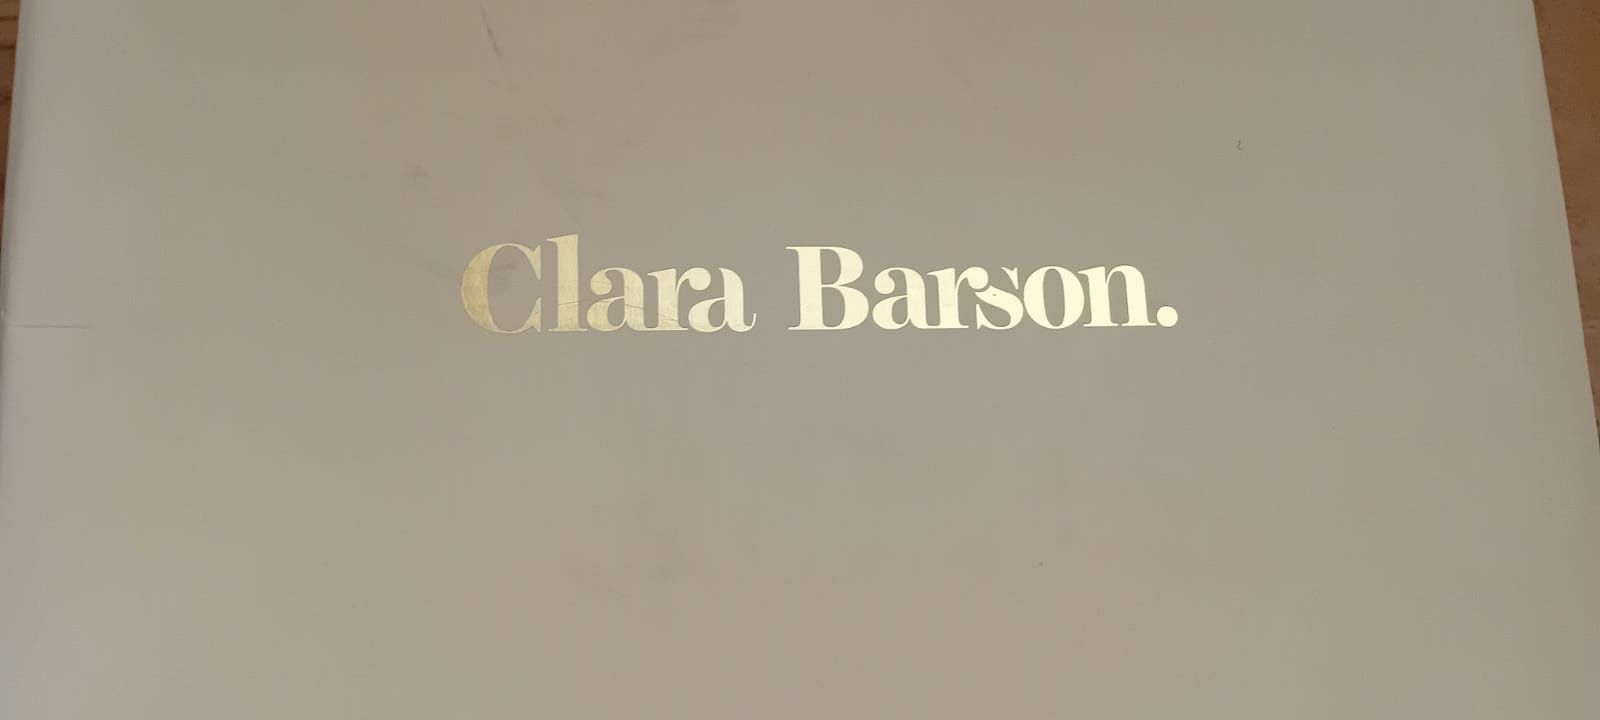 Buty Clara Barson
buty wykonane z imitacji skóry, wygodne,